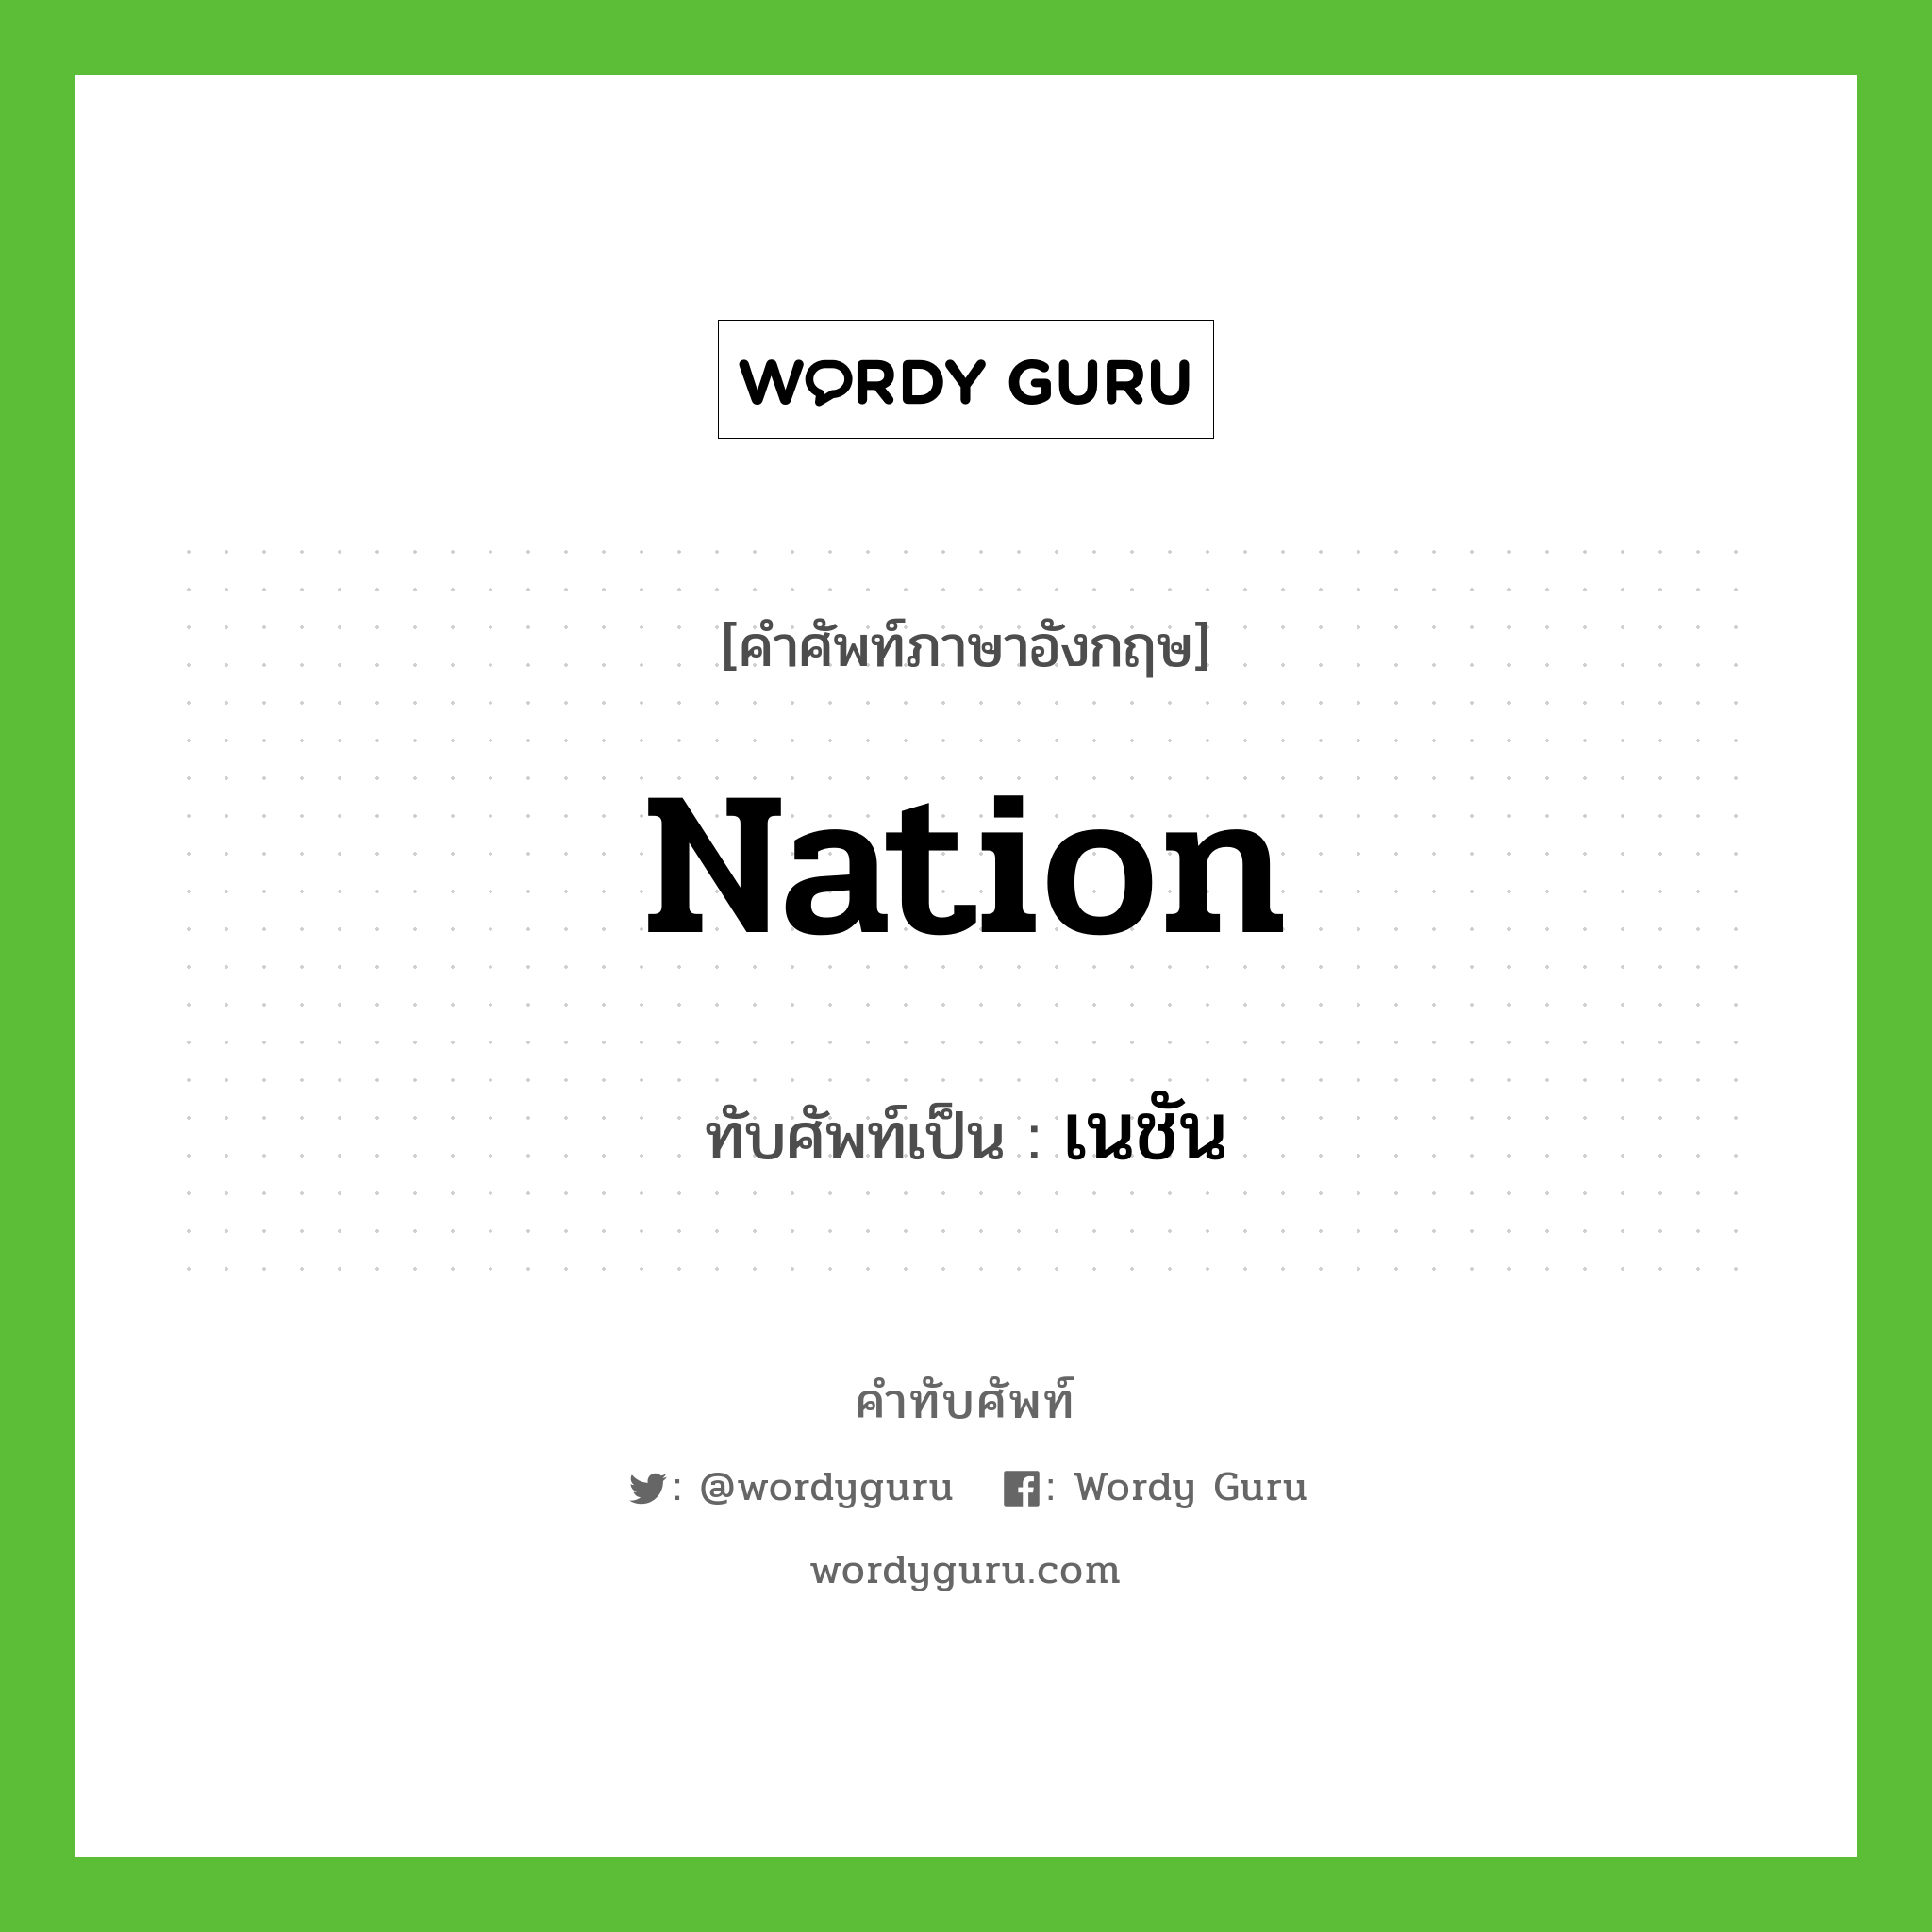 nation เขียนเป็นคำไทยว่าอะไร?, คำศัพท์ภาษาอังกฤษ nation ทับศัพท์เป็น เนชัน